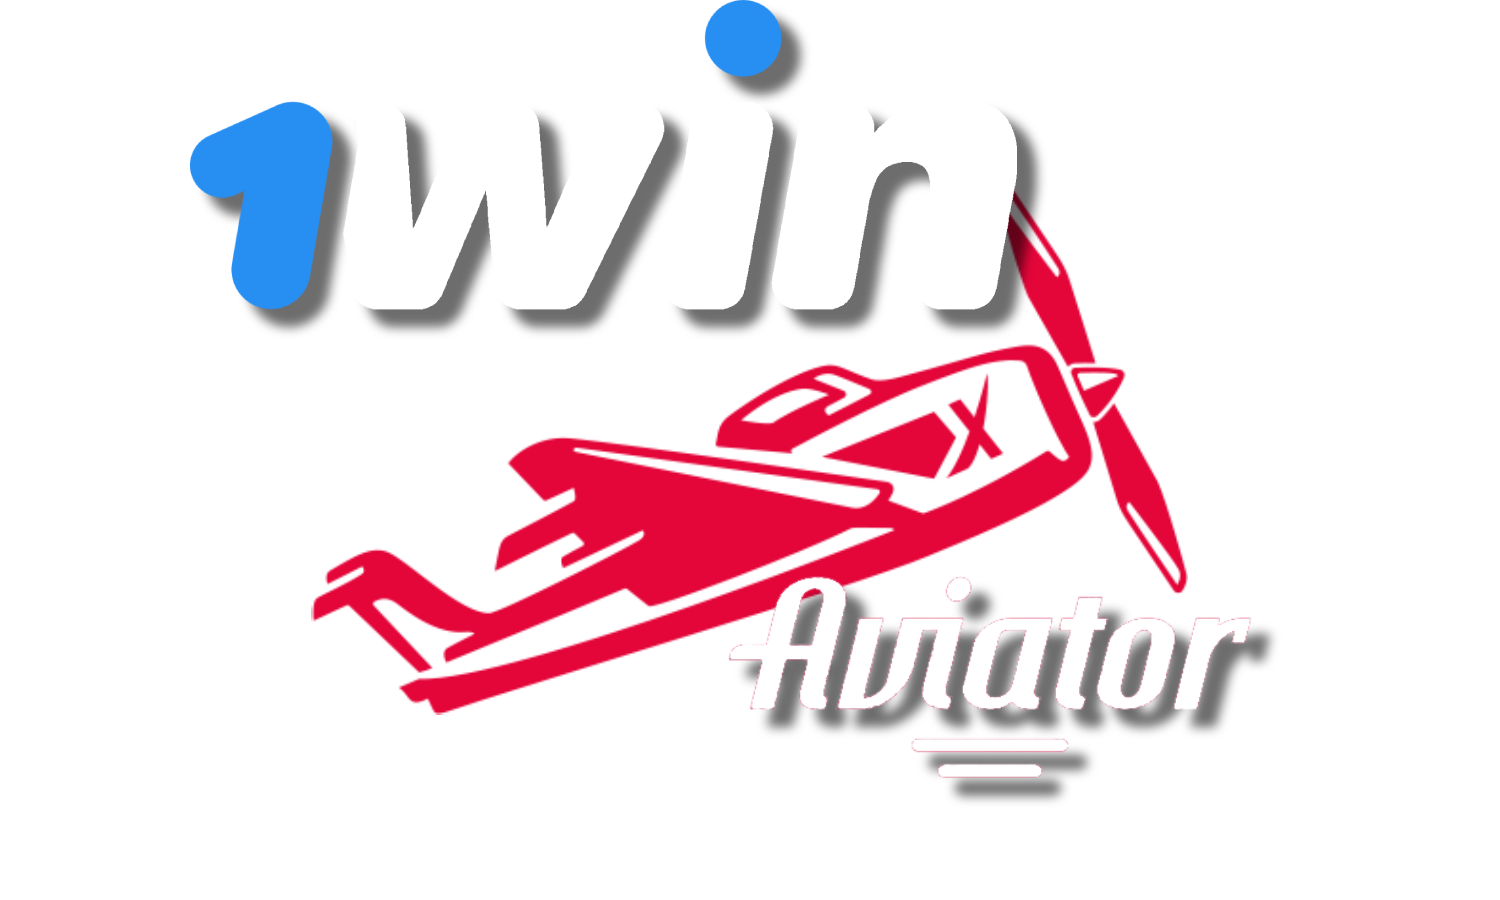 logotipos 1win e aviador